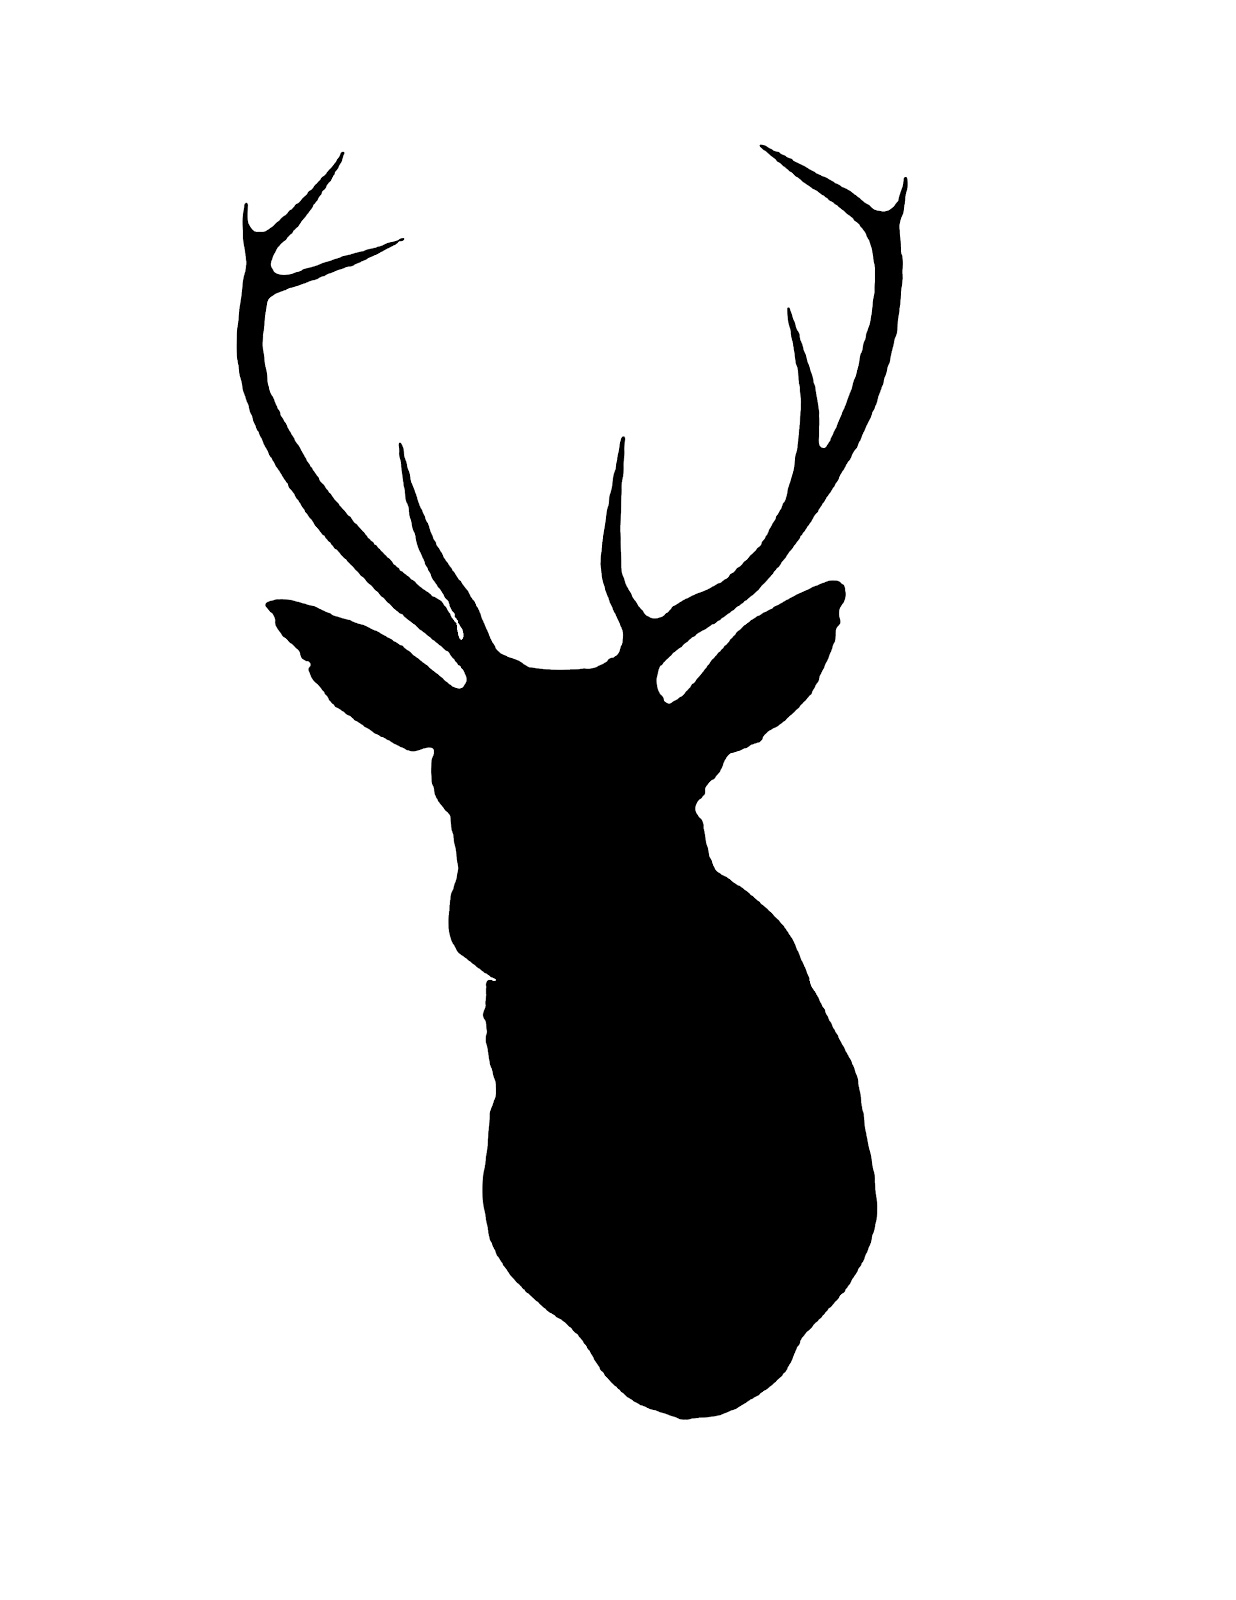 Simple deer head silhouette clipart